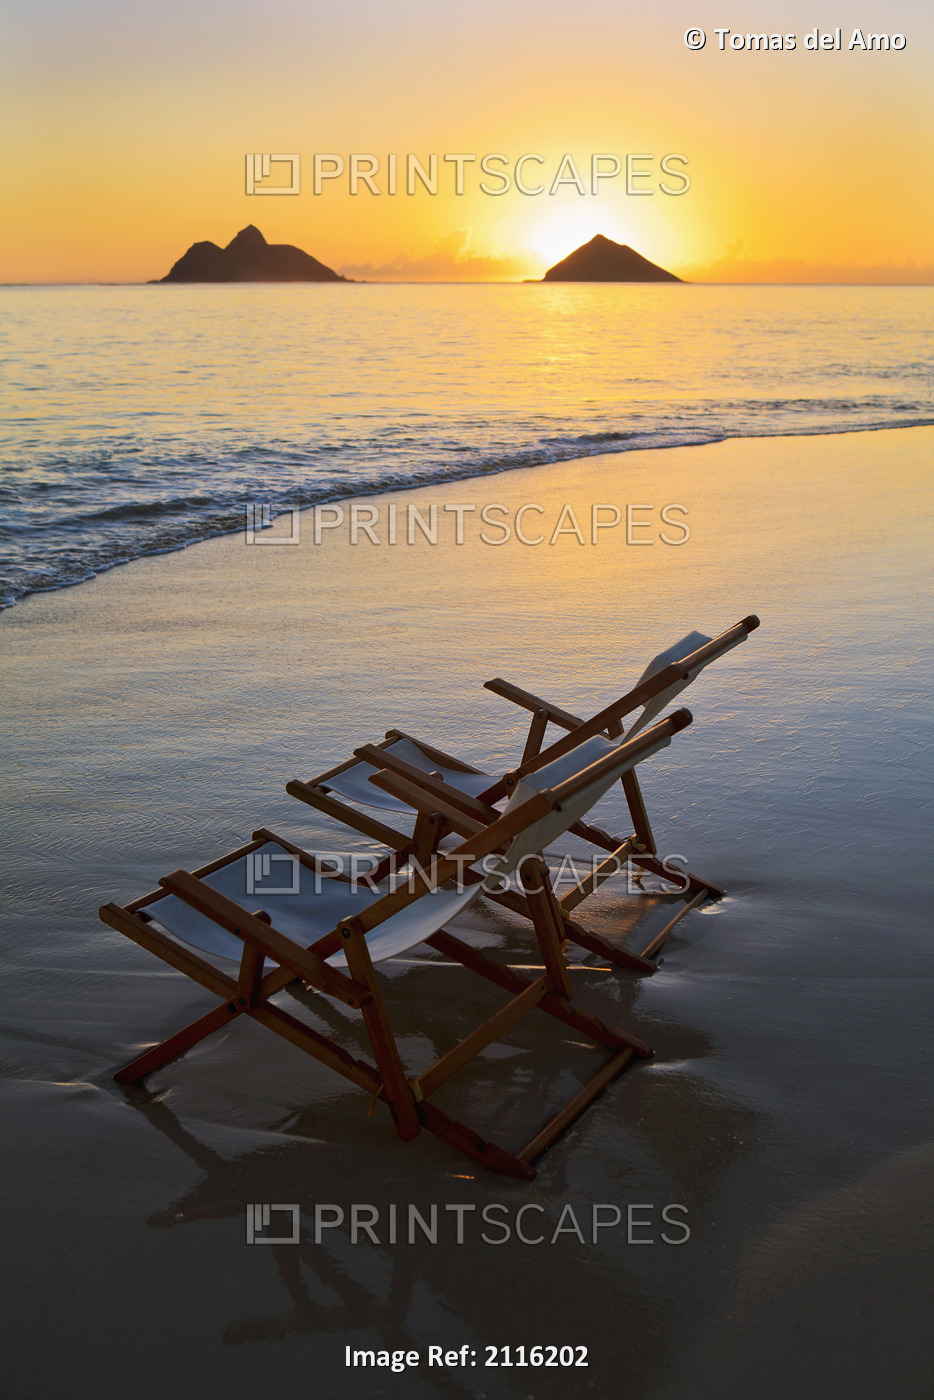 Hawaii, Lanikai, Empty beach chair at sunset.